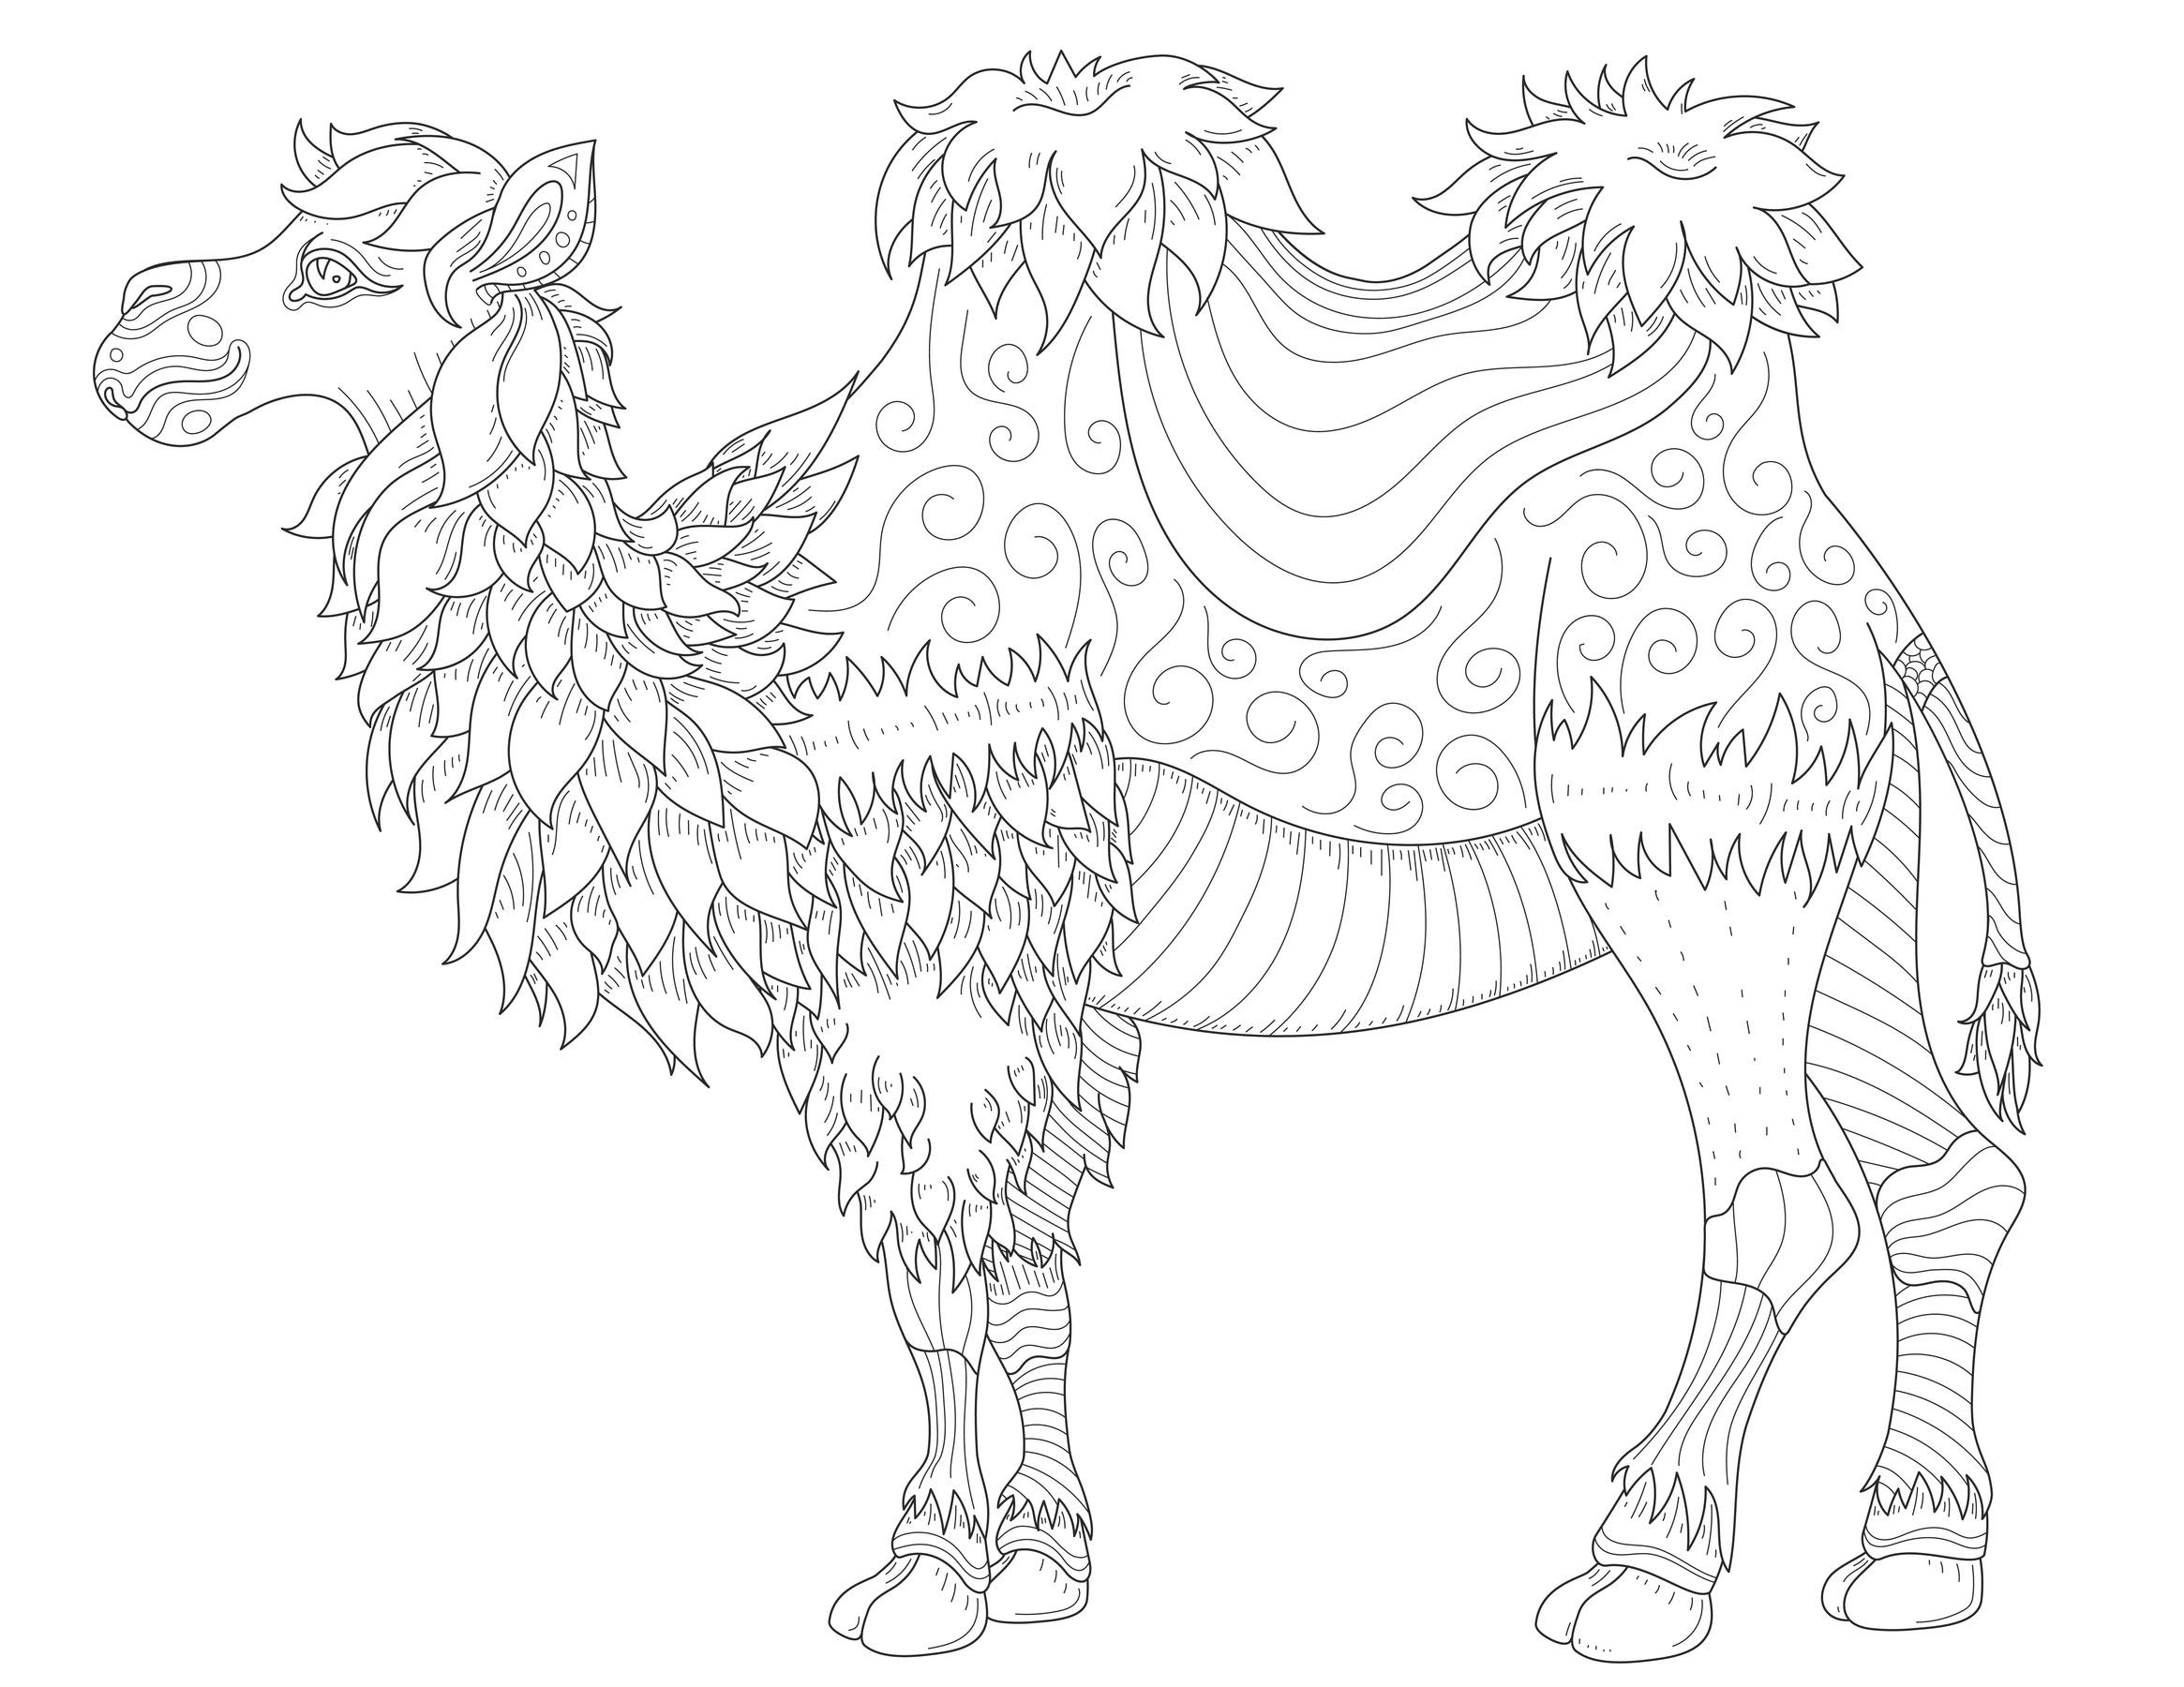 Pagina da colorare di cammello superbo con caratteristiche di disegno molto morbide, Artista : Alexandra Norina   Fonte : 123rf